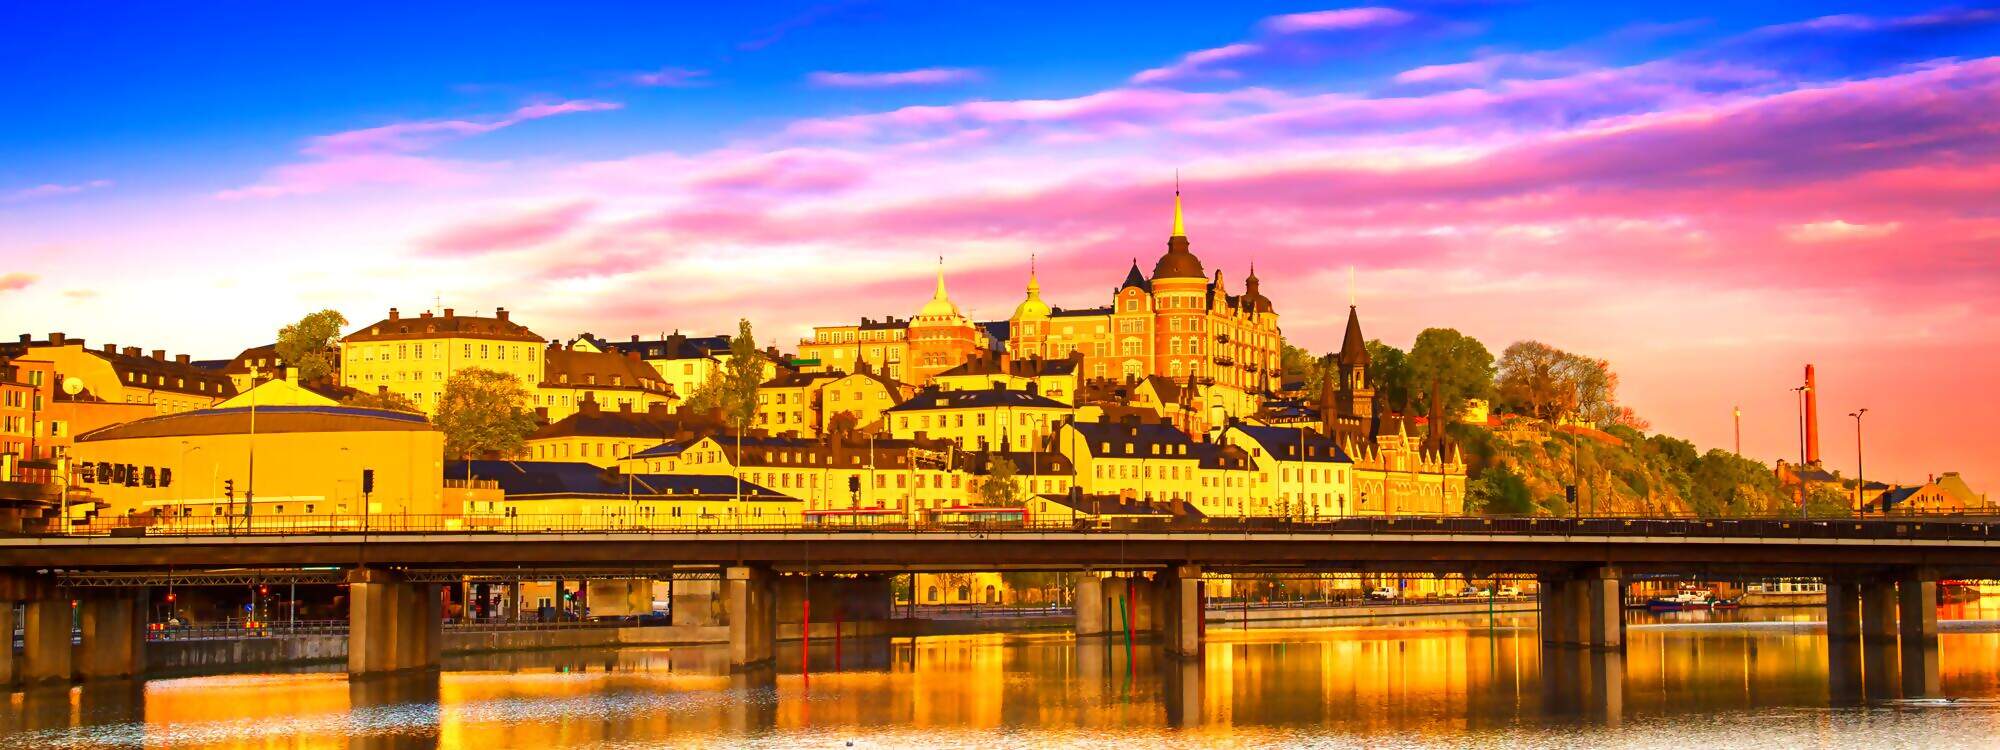 Blick auf die beruehmte skandinavische und nordeuropaeische Stadt Stockholm - die Hauptstadt von Schwedens